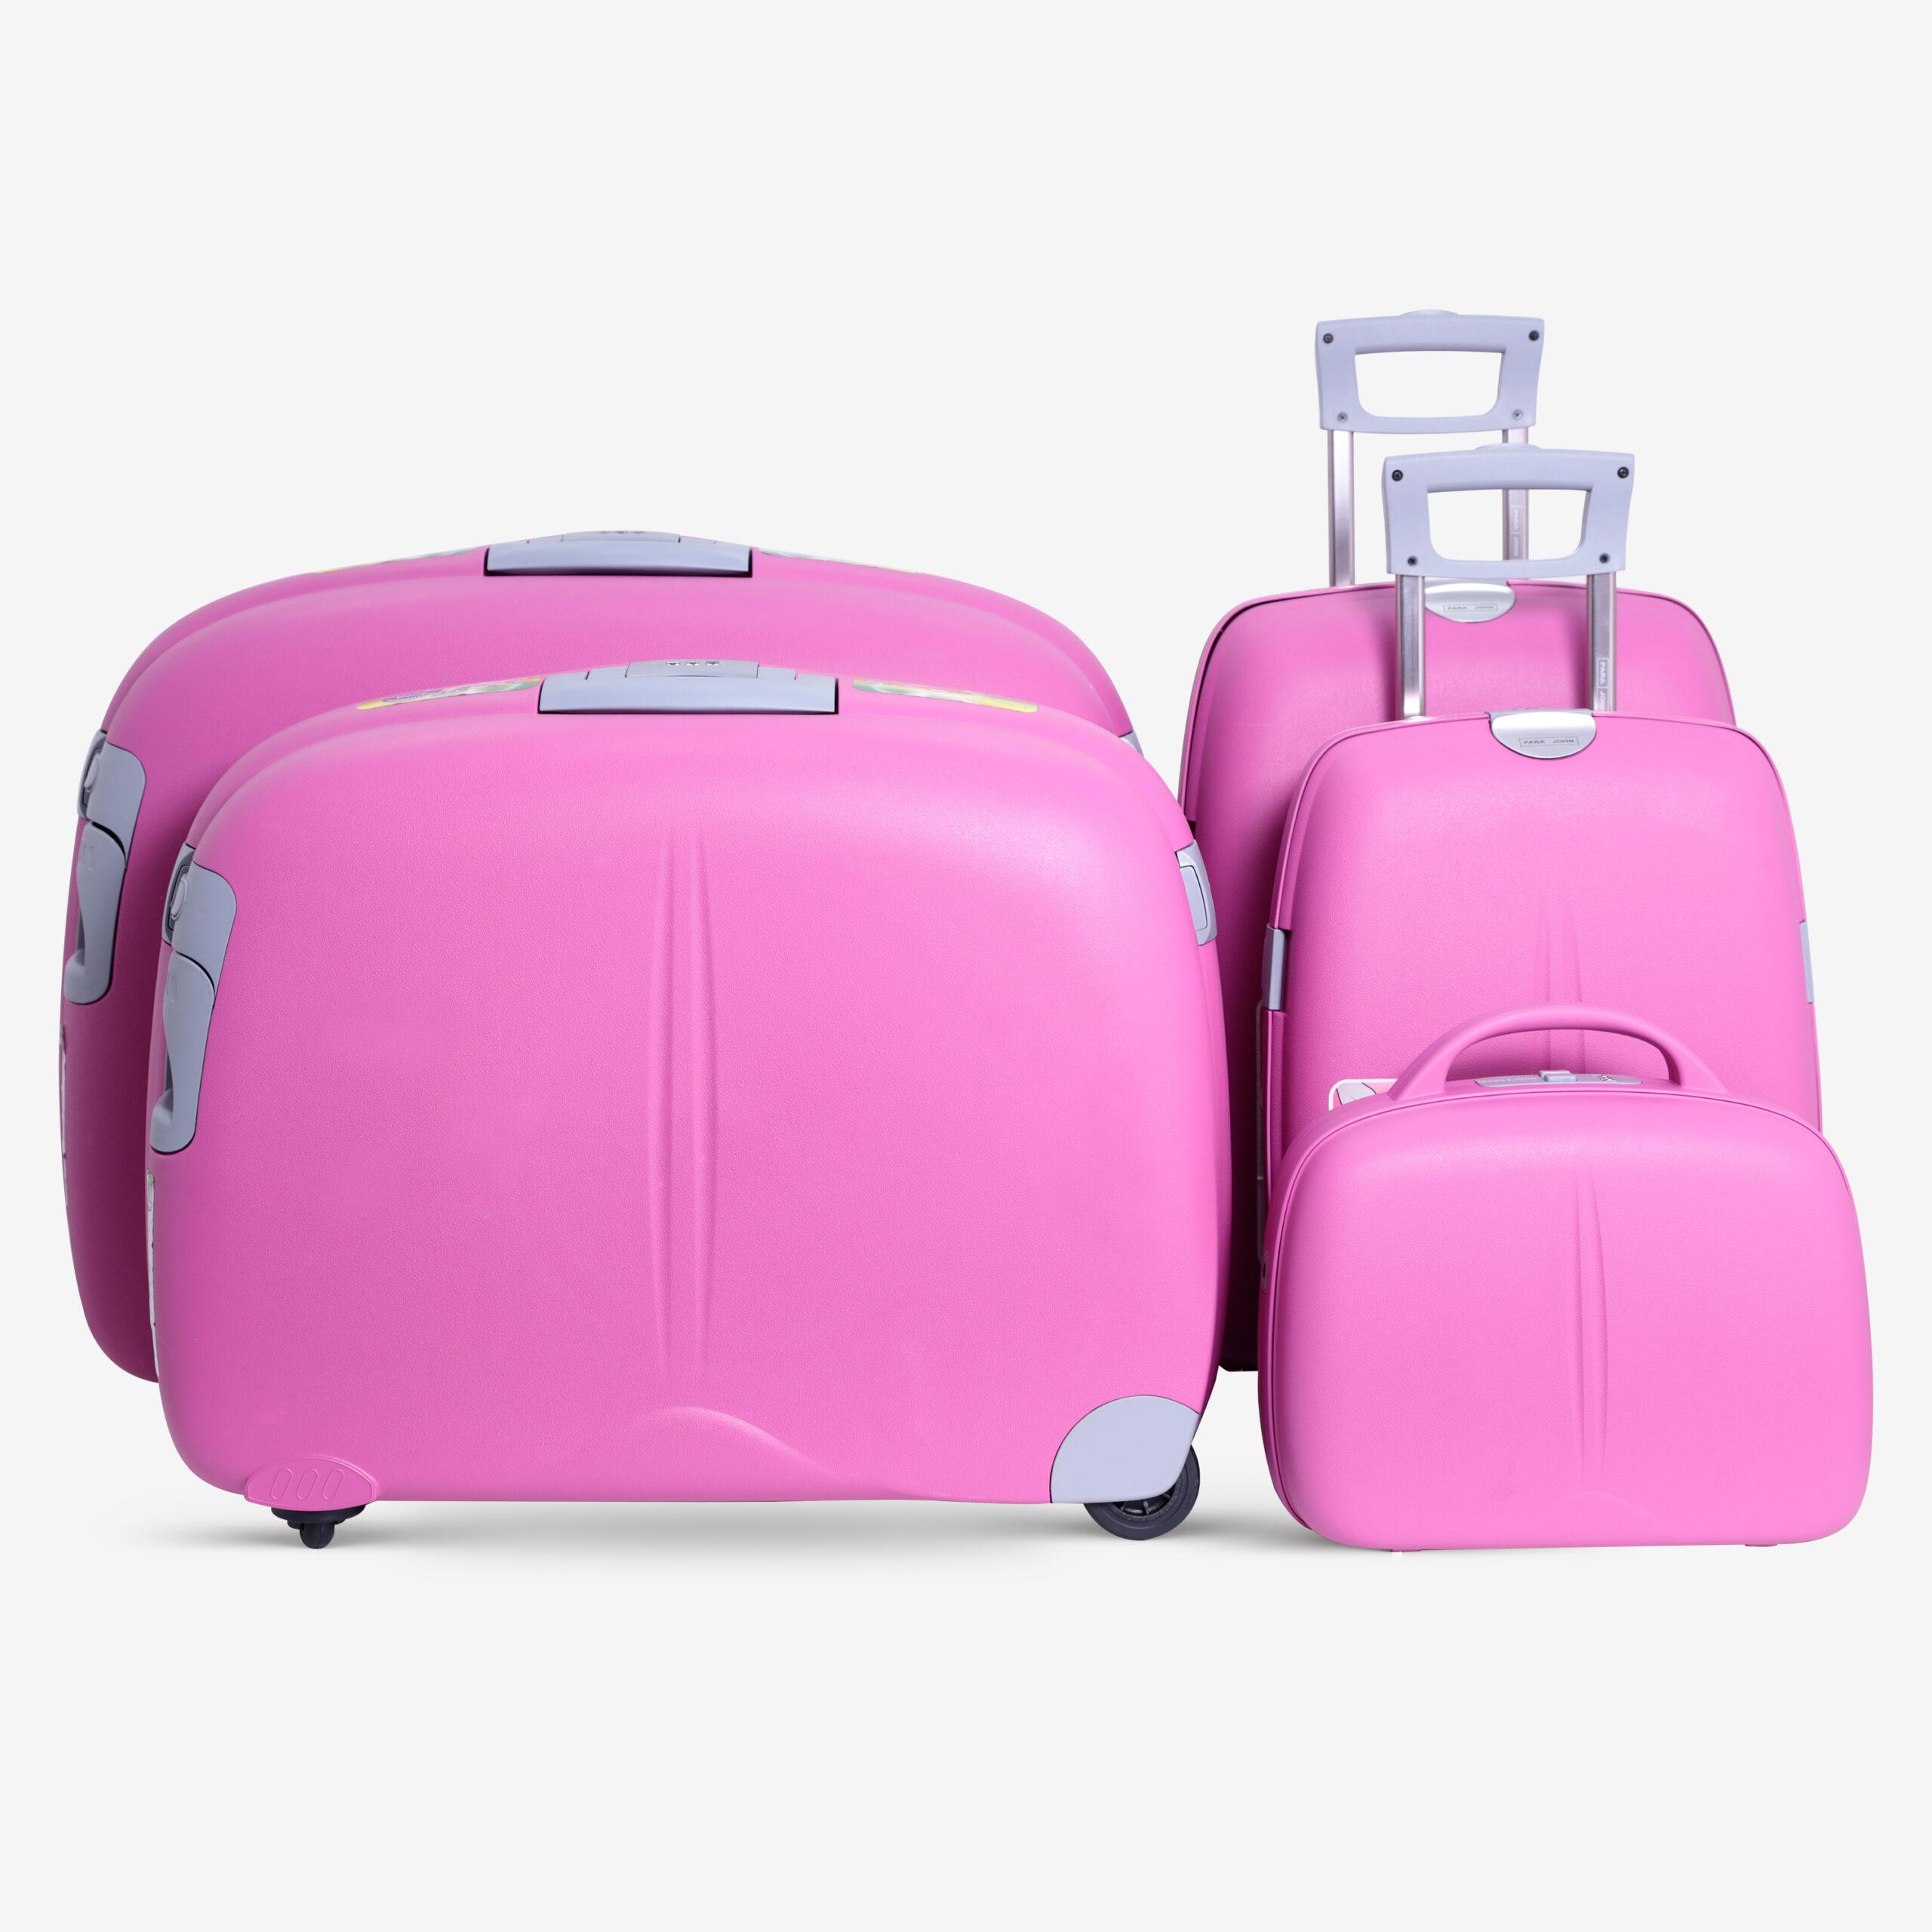 طقم حقائب سفر دوارة 5 حقائب (14 ، 18 ، 22 ، 27 ، 31) بوصة PP زهري غامق PARA JOHN - Travel Luggage Suitcase Set of 5 Lightweight Travel Bags with 360° Durable 4 Spinner Wheels - (14 ، 18 ، 22 ، 27 ، 31) inch